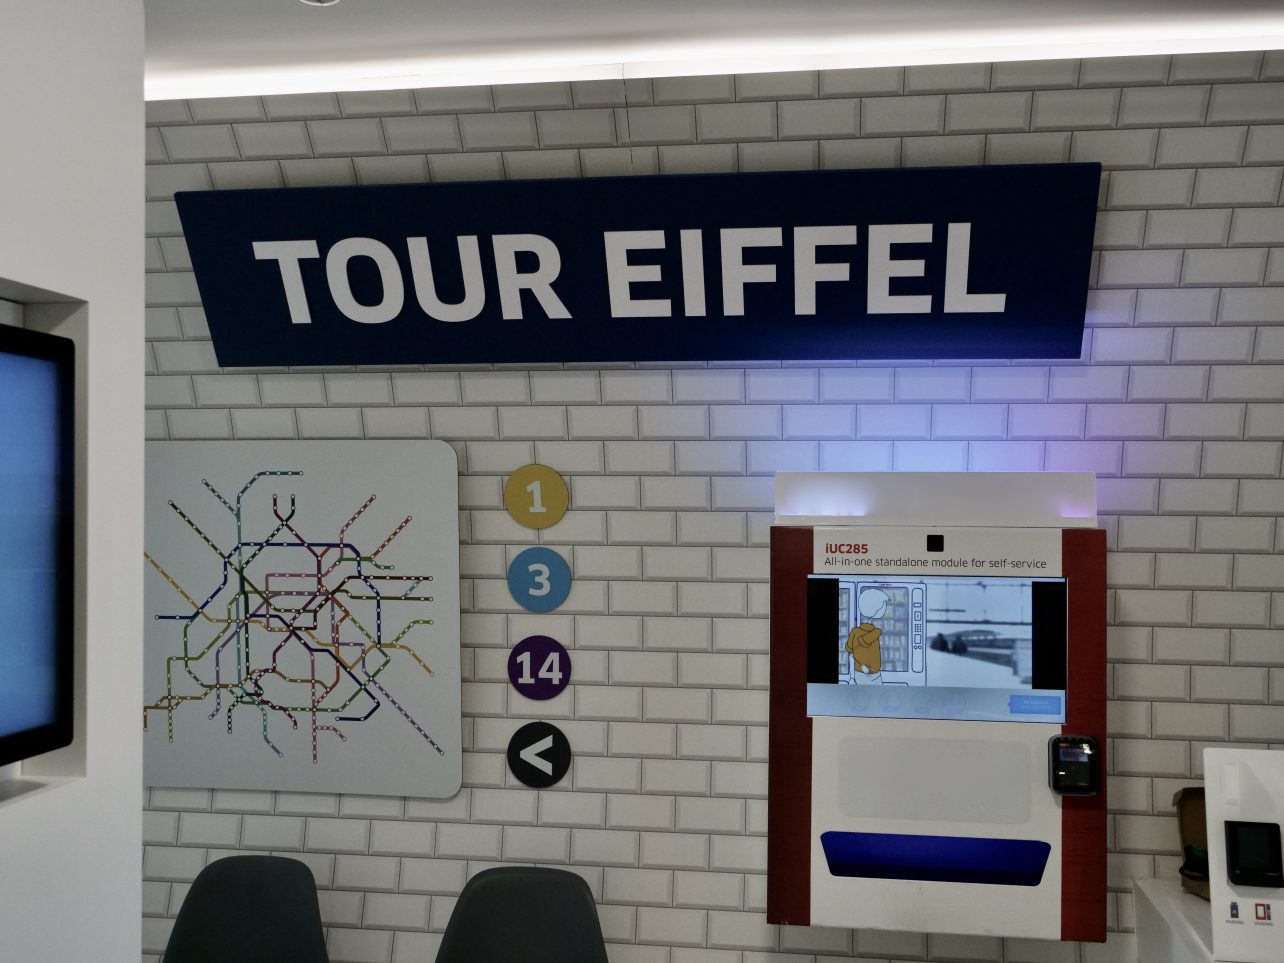 Connaissez-vous la station de métro Tour Eiffel